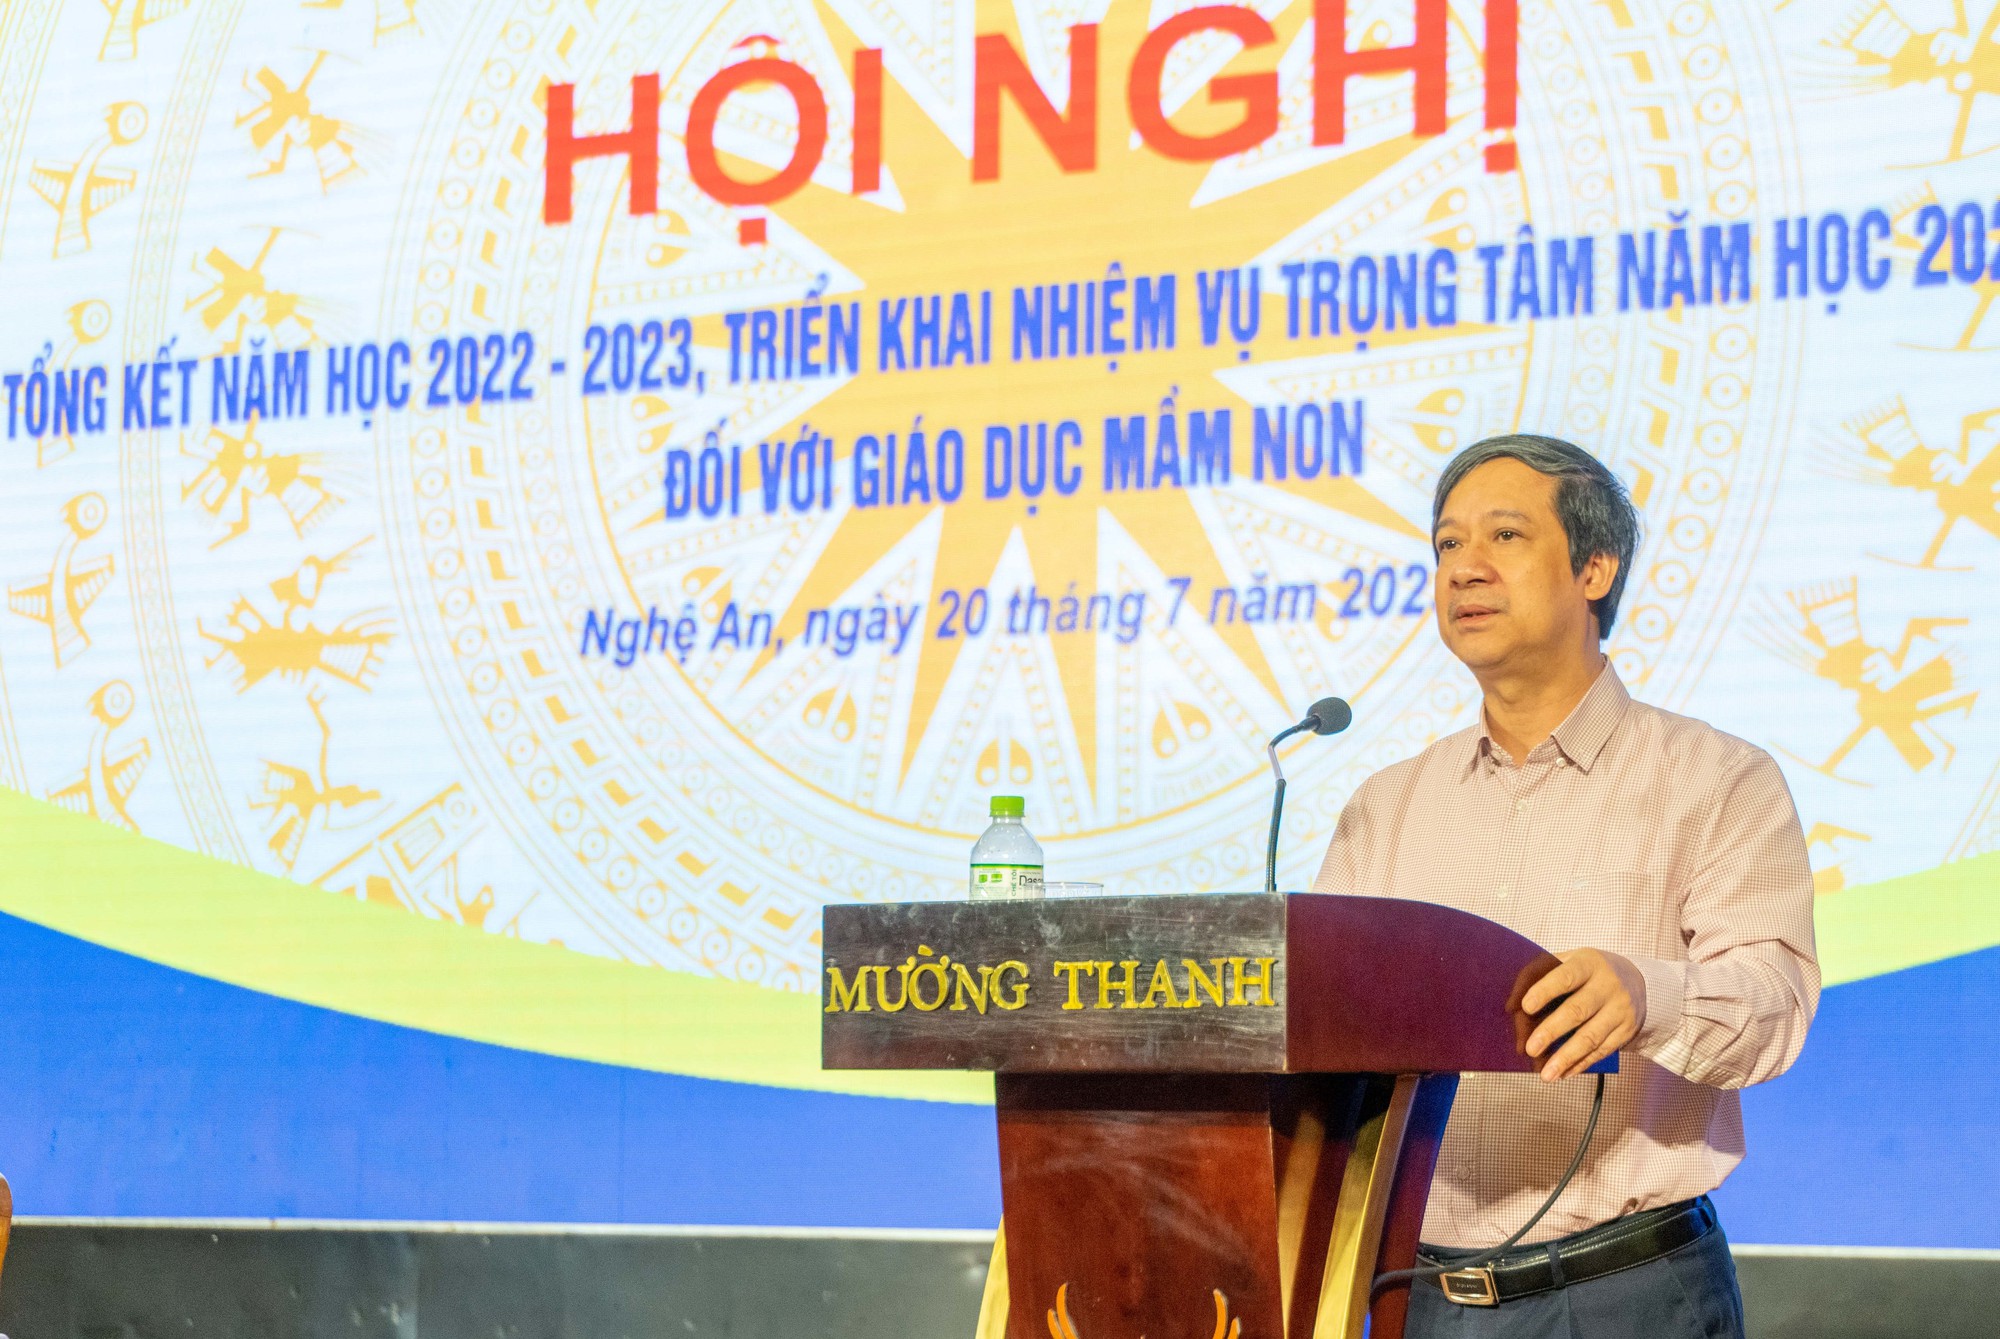 Giữ giáo viên, đủ trường lớp: Thách thức cho Bộ trưởng Nguyễn Kim Sơn trong năm học mới - Ảnh 2.